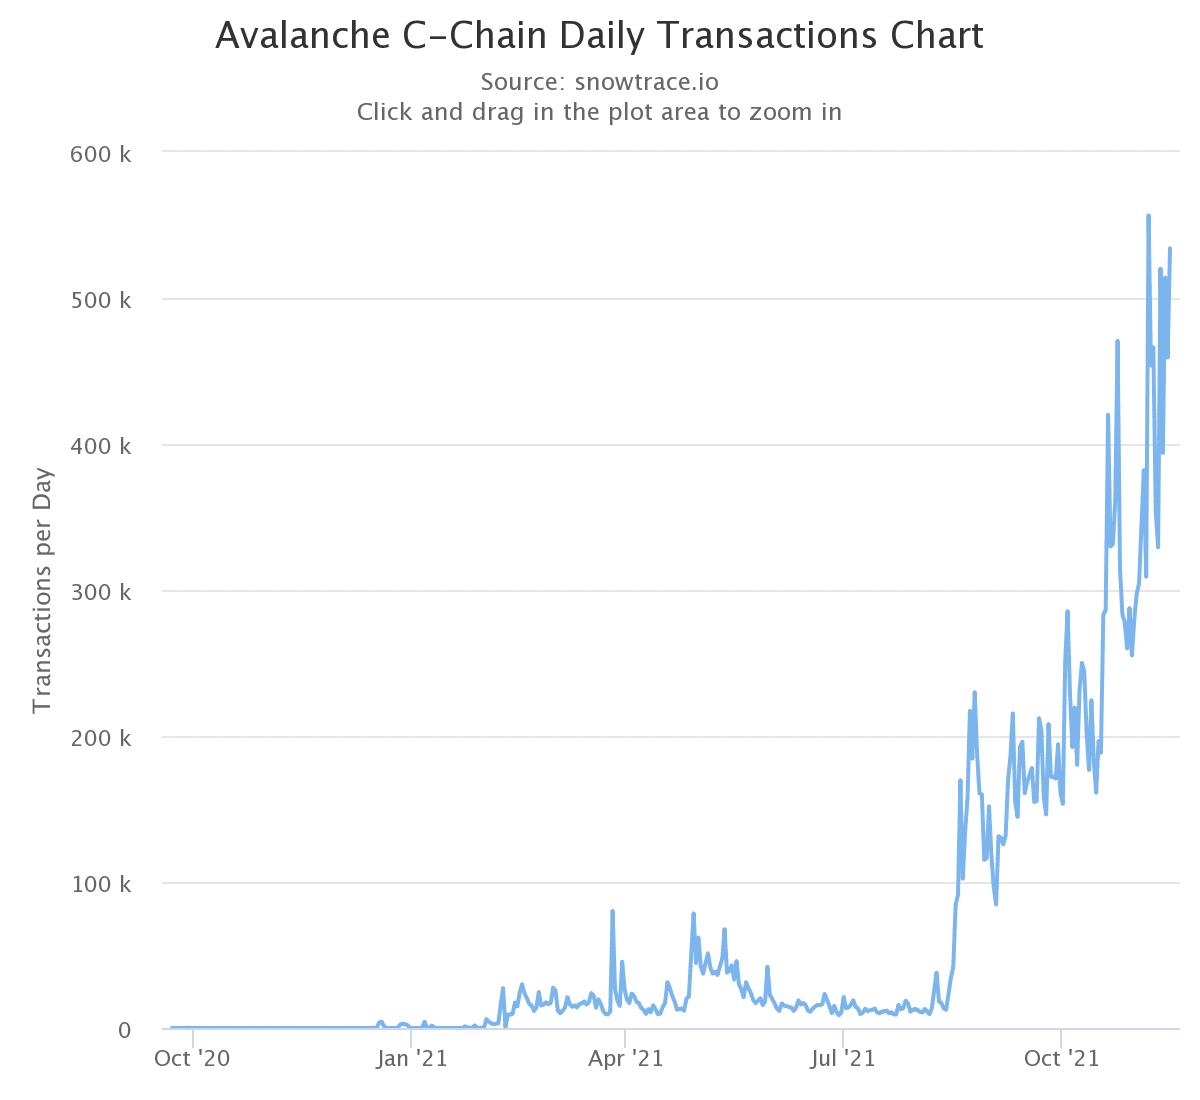 Grafico che mostra il numero di transazioni giornaliere sulla C-Chain di Avalanche (Fonte: SnowTrace)